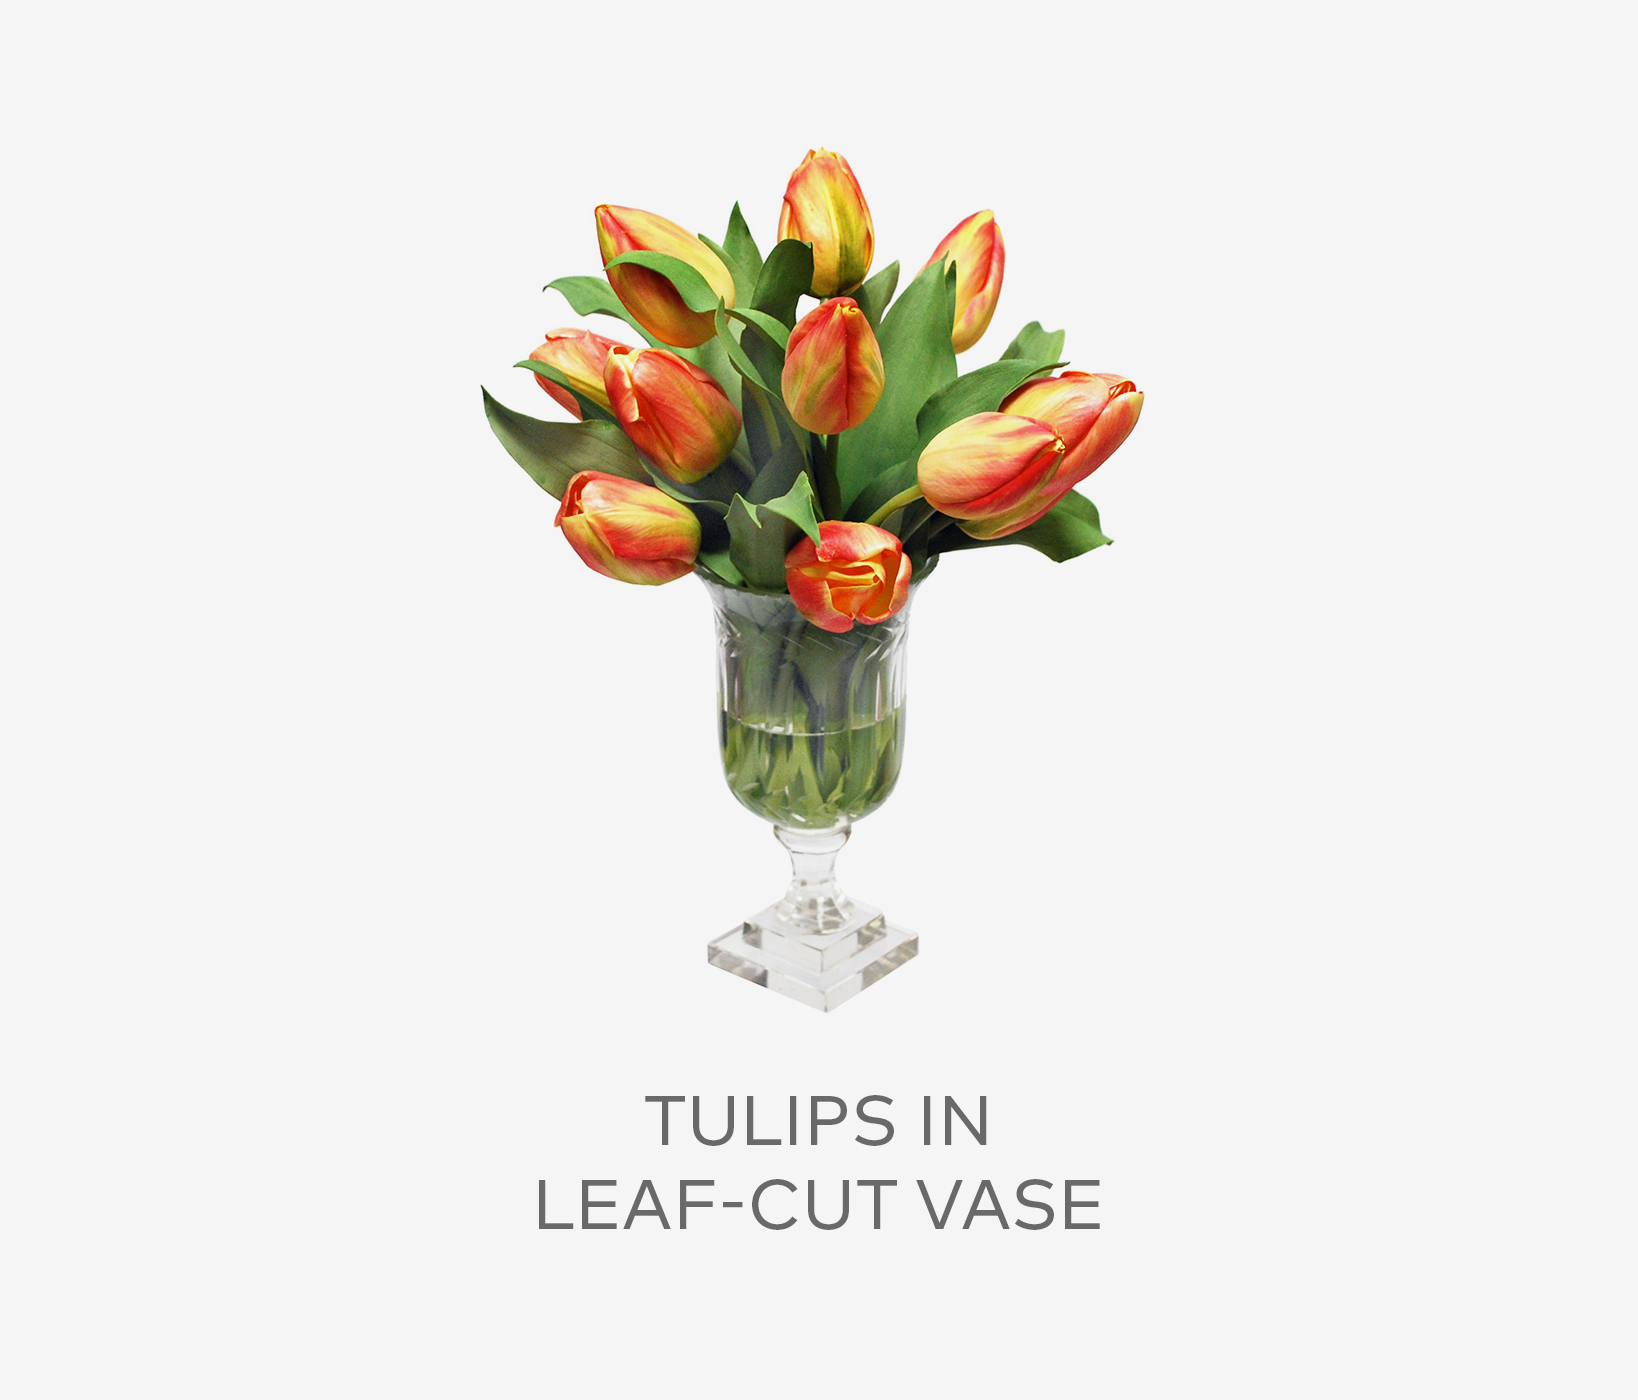 Tulips in Leaf-Cut Vase